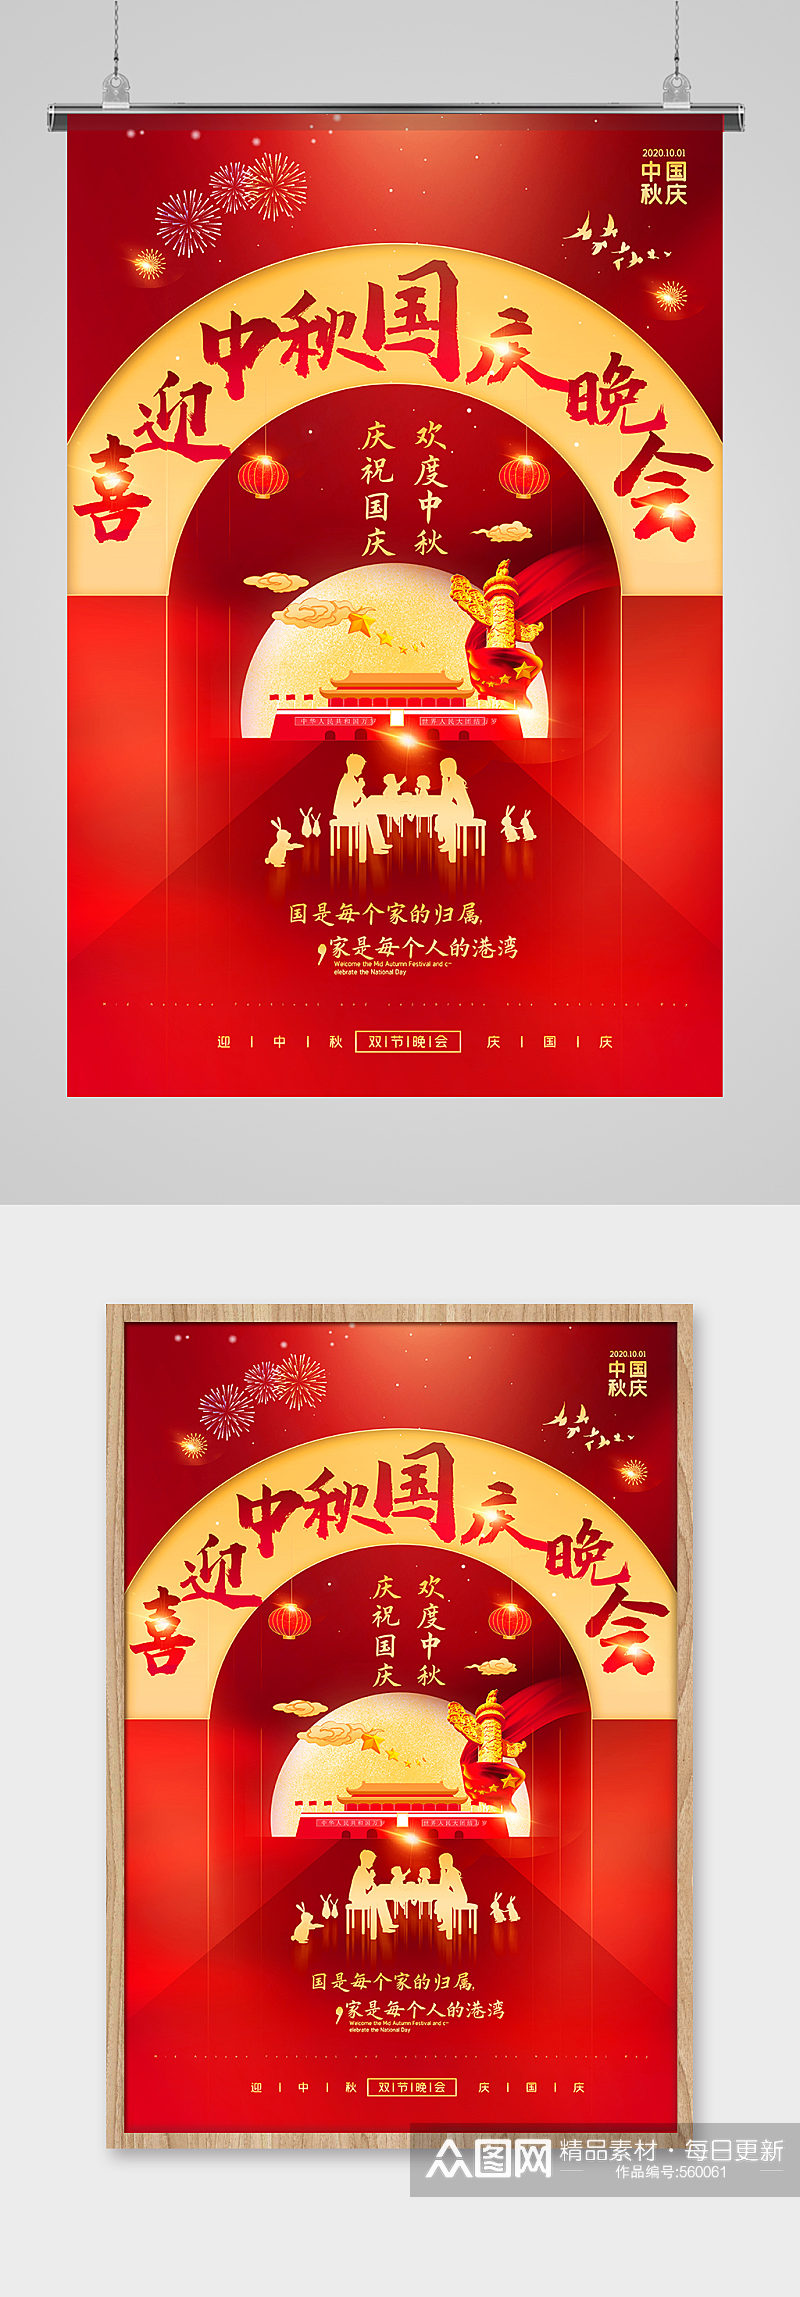 红色喜庆中秋国庆双节同庆晚会宣传海报素材